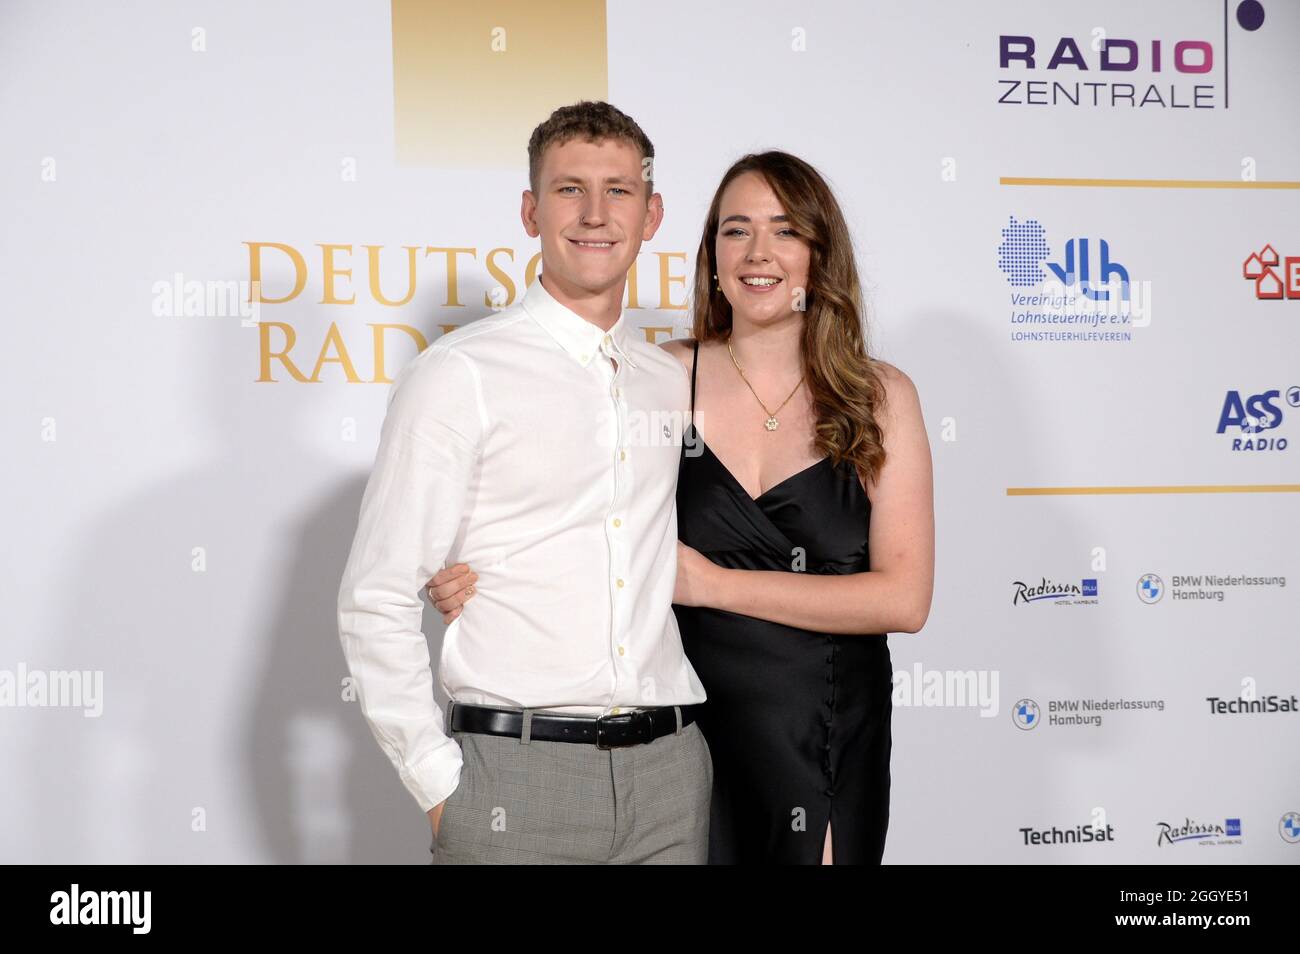 Hamburg der 02.09.2021 - Nathan Evans mit seiner Ehefrau Holly Evans bei der Verleihung des Deutschen Radiopreises 2021 in Hamburg auf dem goldenen Teppich. Stockfoto